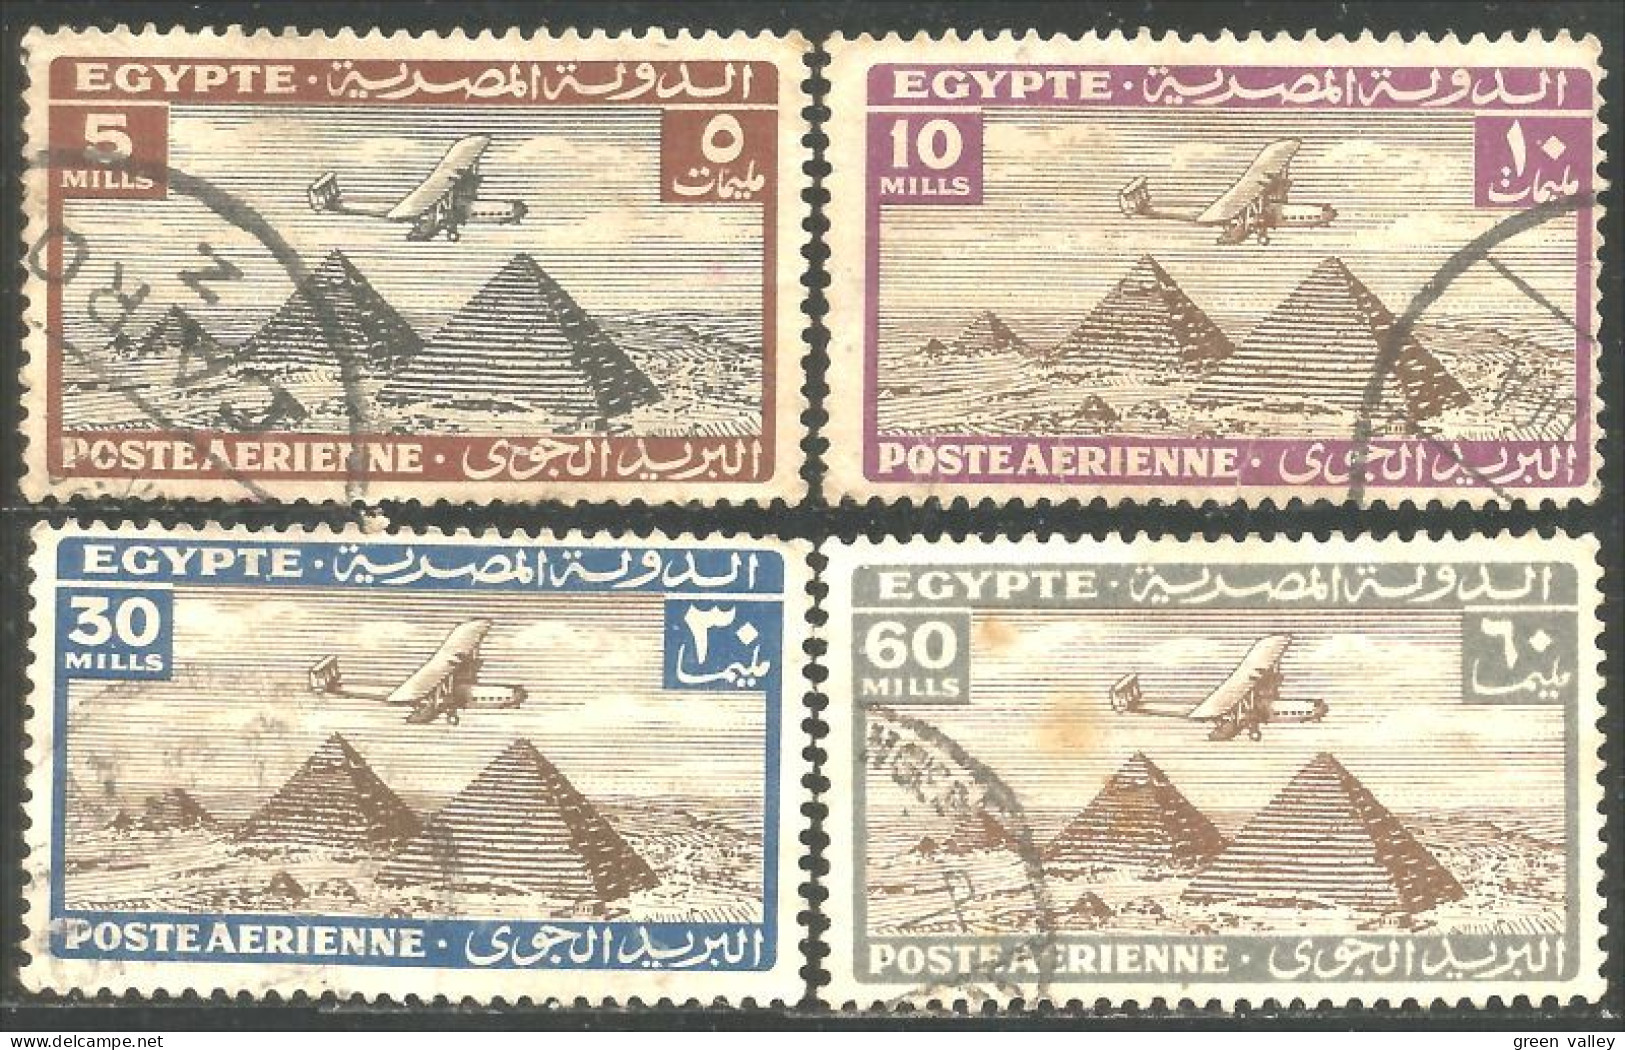 316 Egypte Avion Douglas DC-3 Airplane Flugzeug Pyramides Gizeh Giza Pyramids (EGY-172) - Posta Aerea